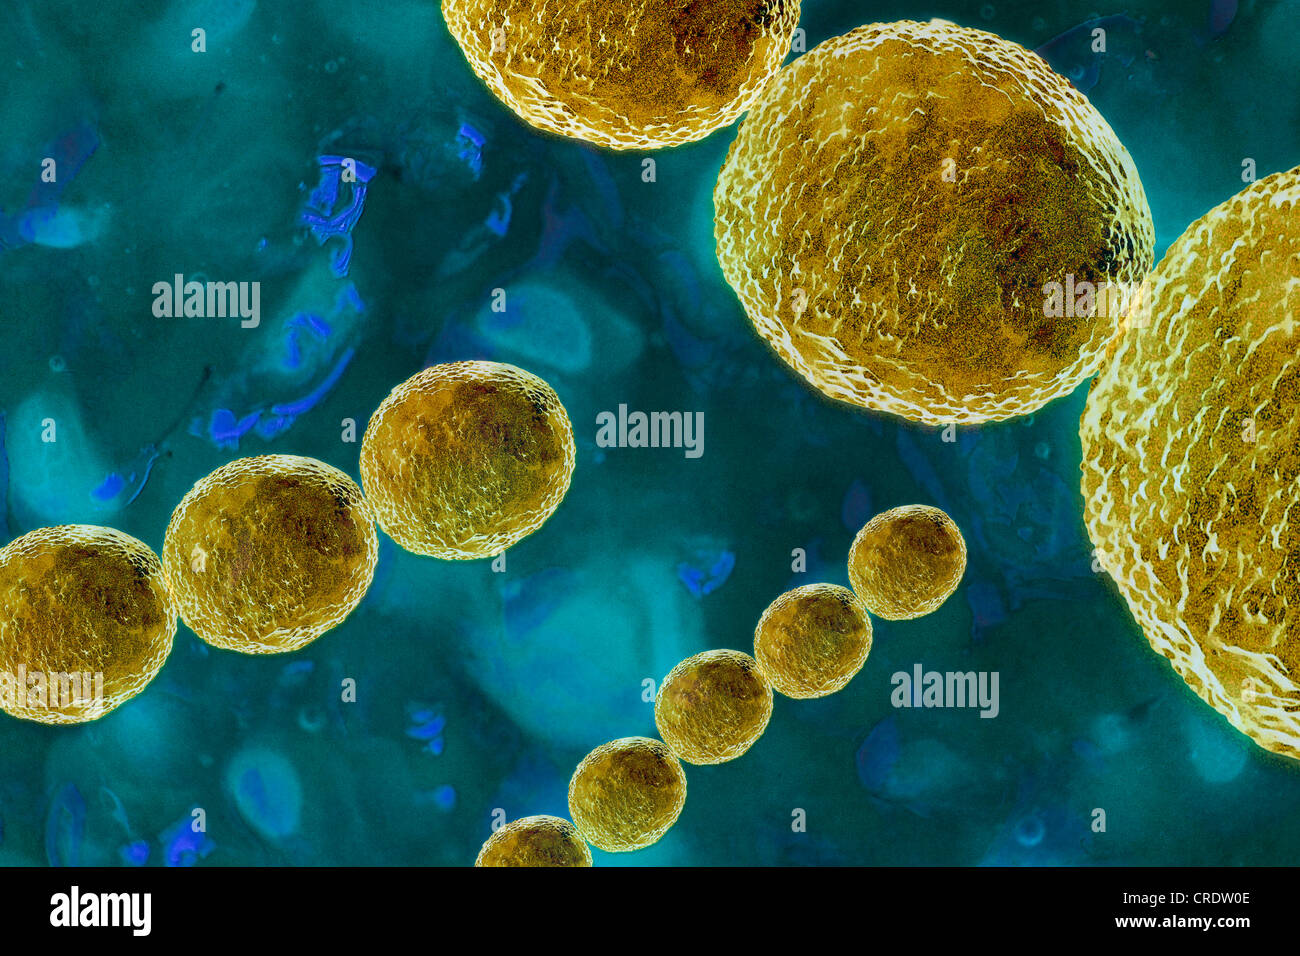 Streptokokken-Bakterien, eine gefährliche Erreger, illustration Stockfoto